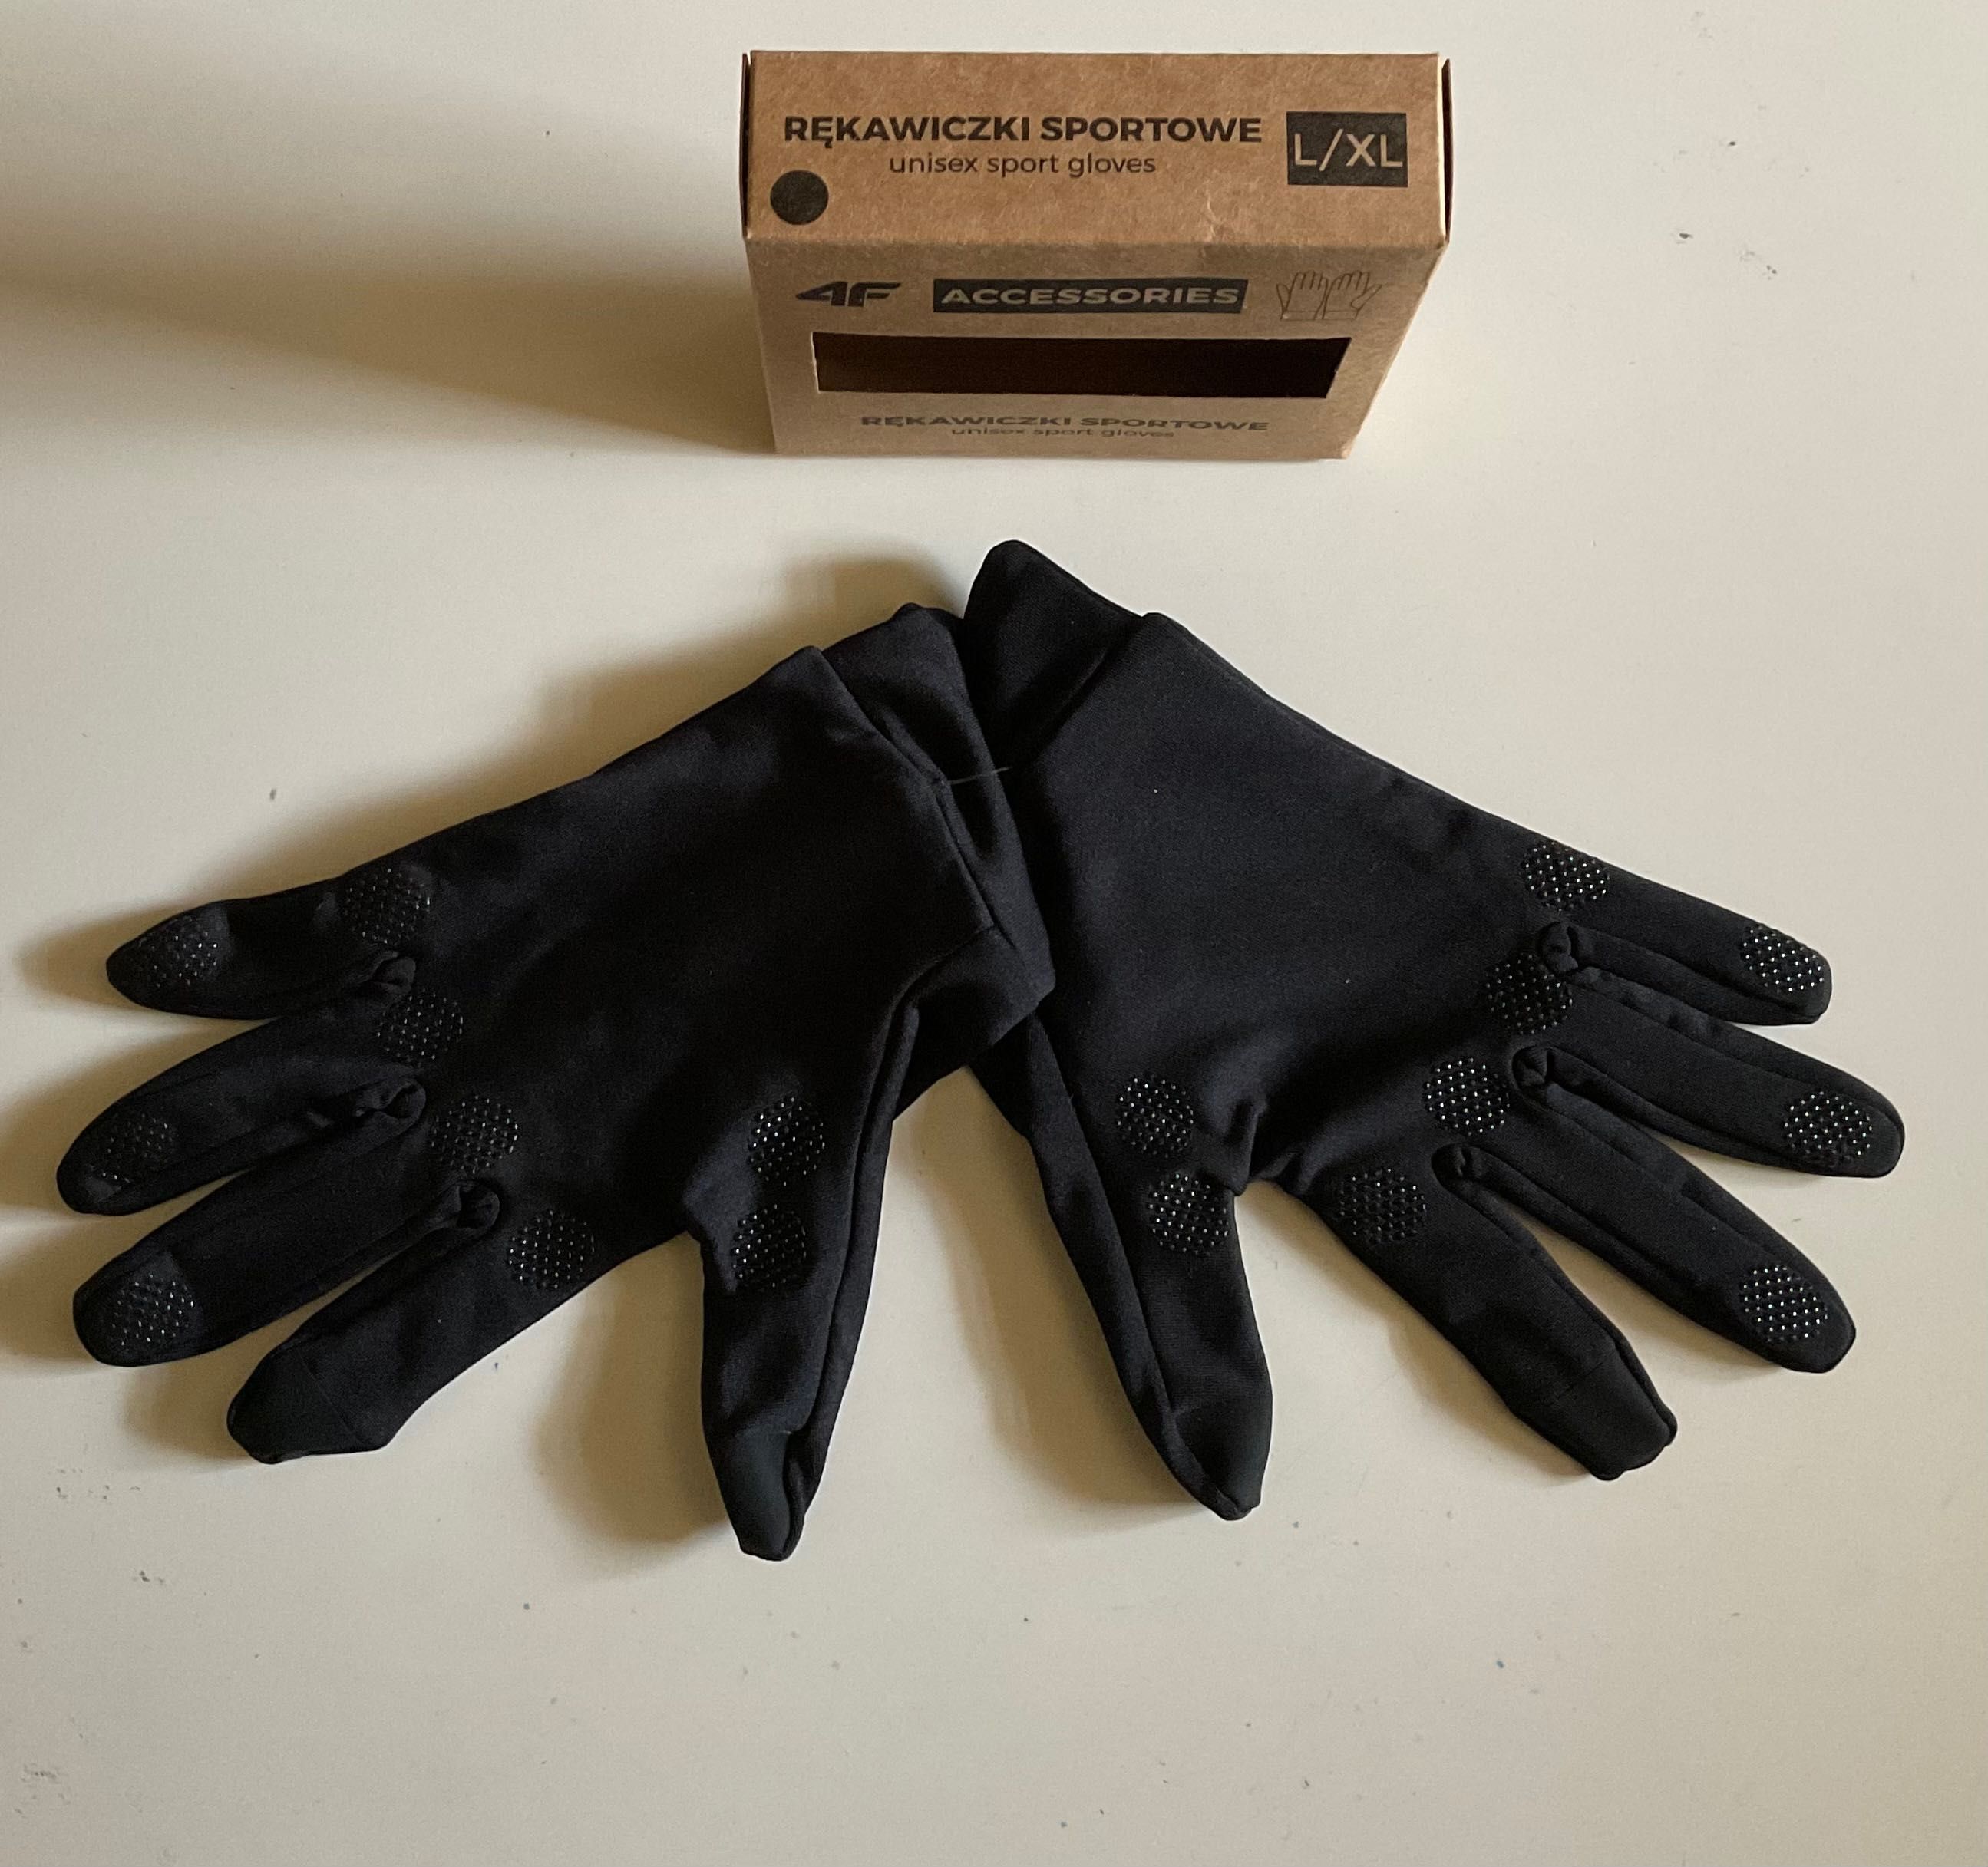 4F rękawiczki sportowe czarne rozmiar L/XL nowe